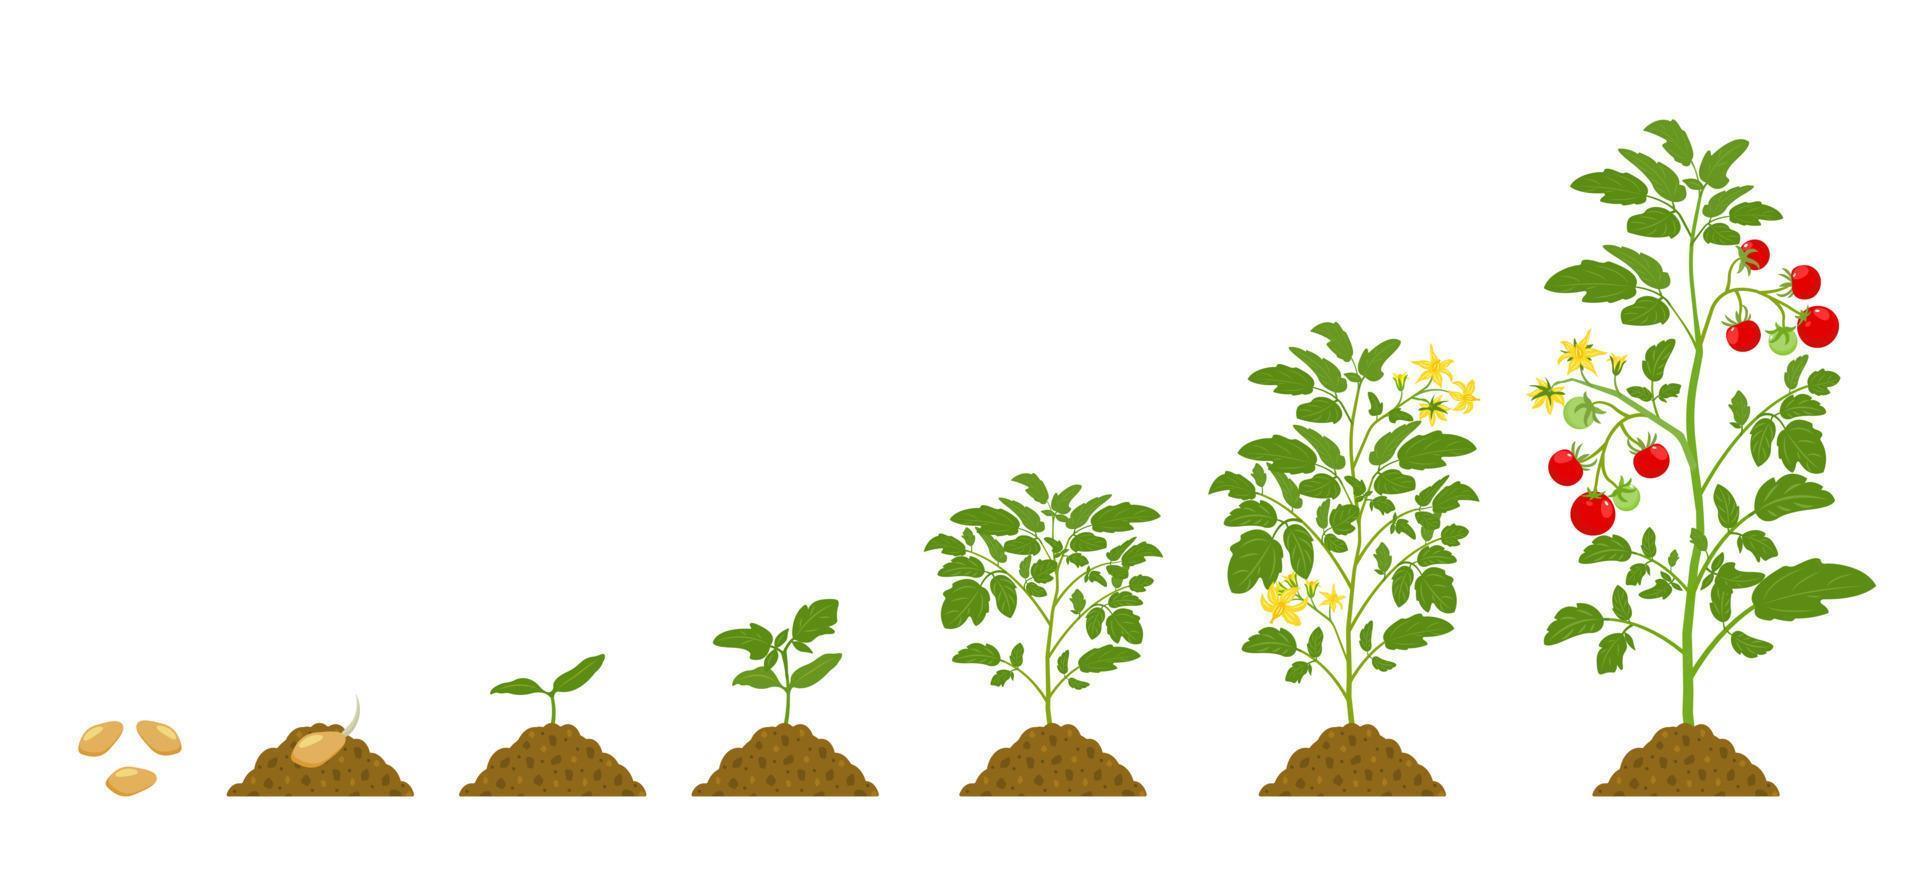 ciclo de crescimento de tomates no solo em fundo branco. estágios de desenvolvimento de hortaliças. vetor